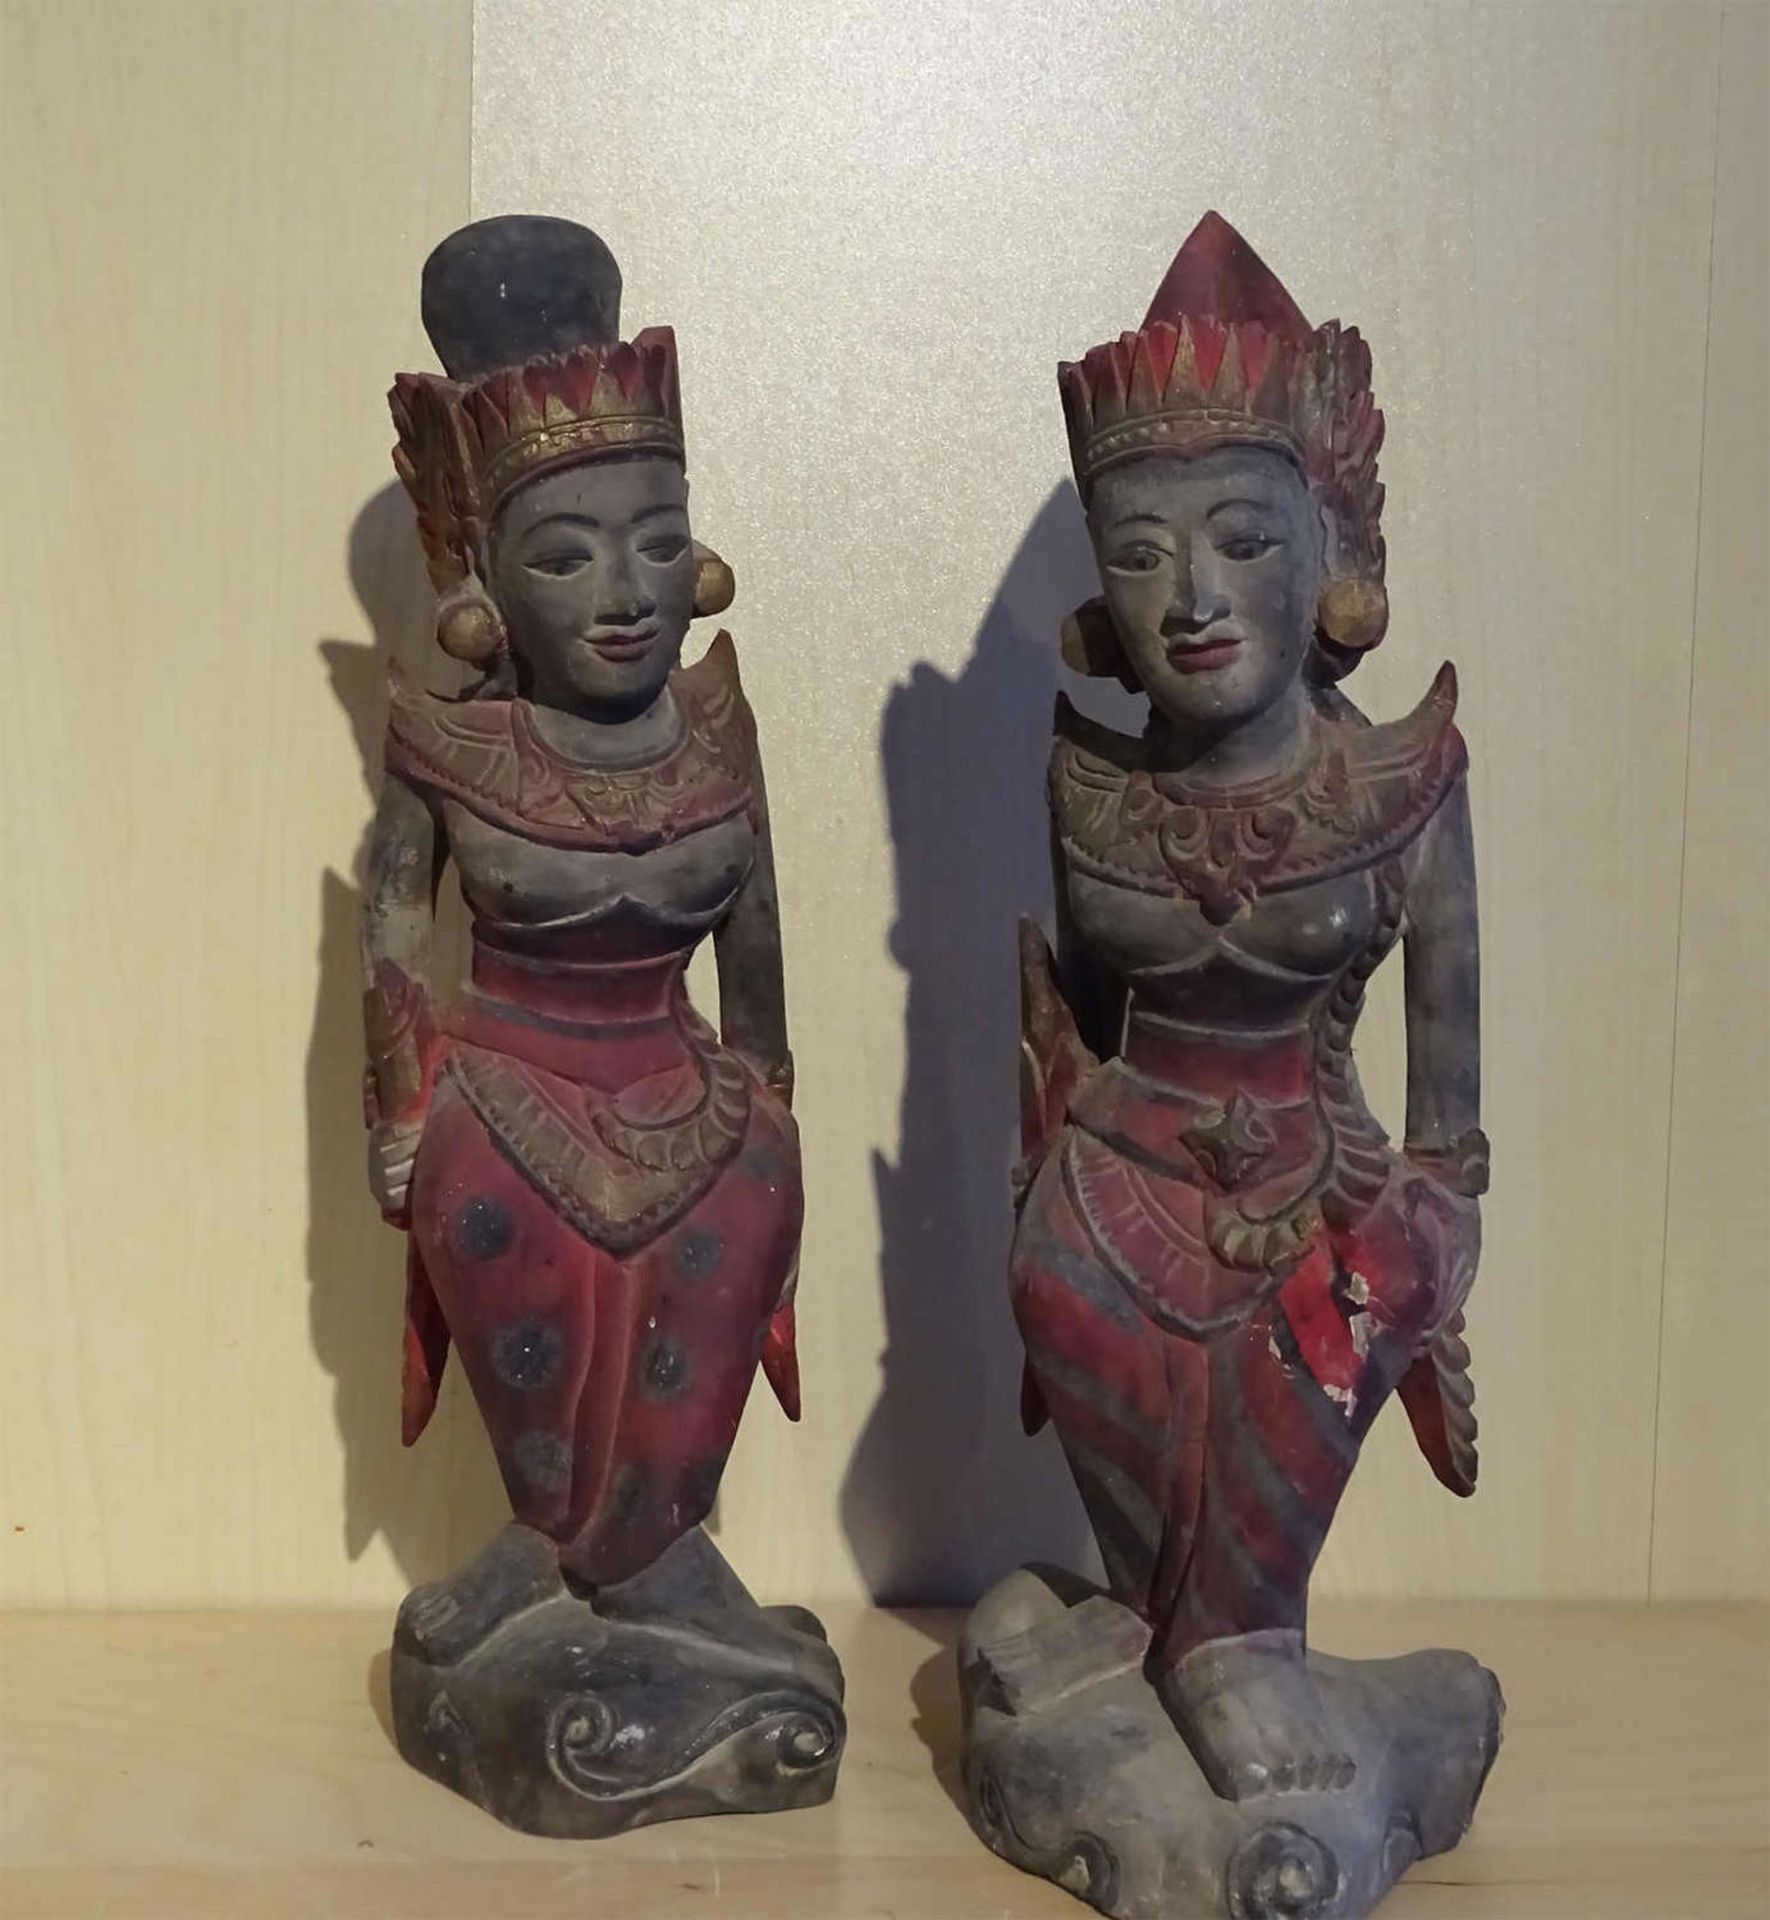 2 Holzschnitzereien Asien "Tempeltänzerinnen", Höhe ca 30cm. Farbe teilweise rissig (nicht